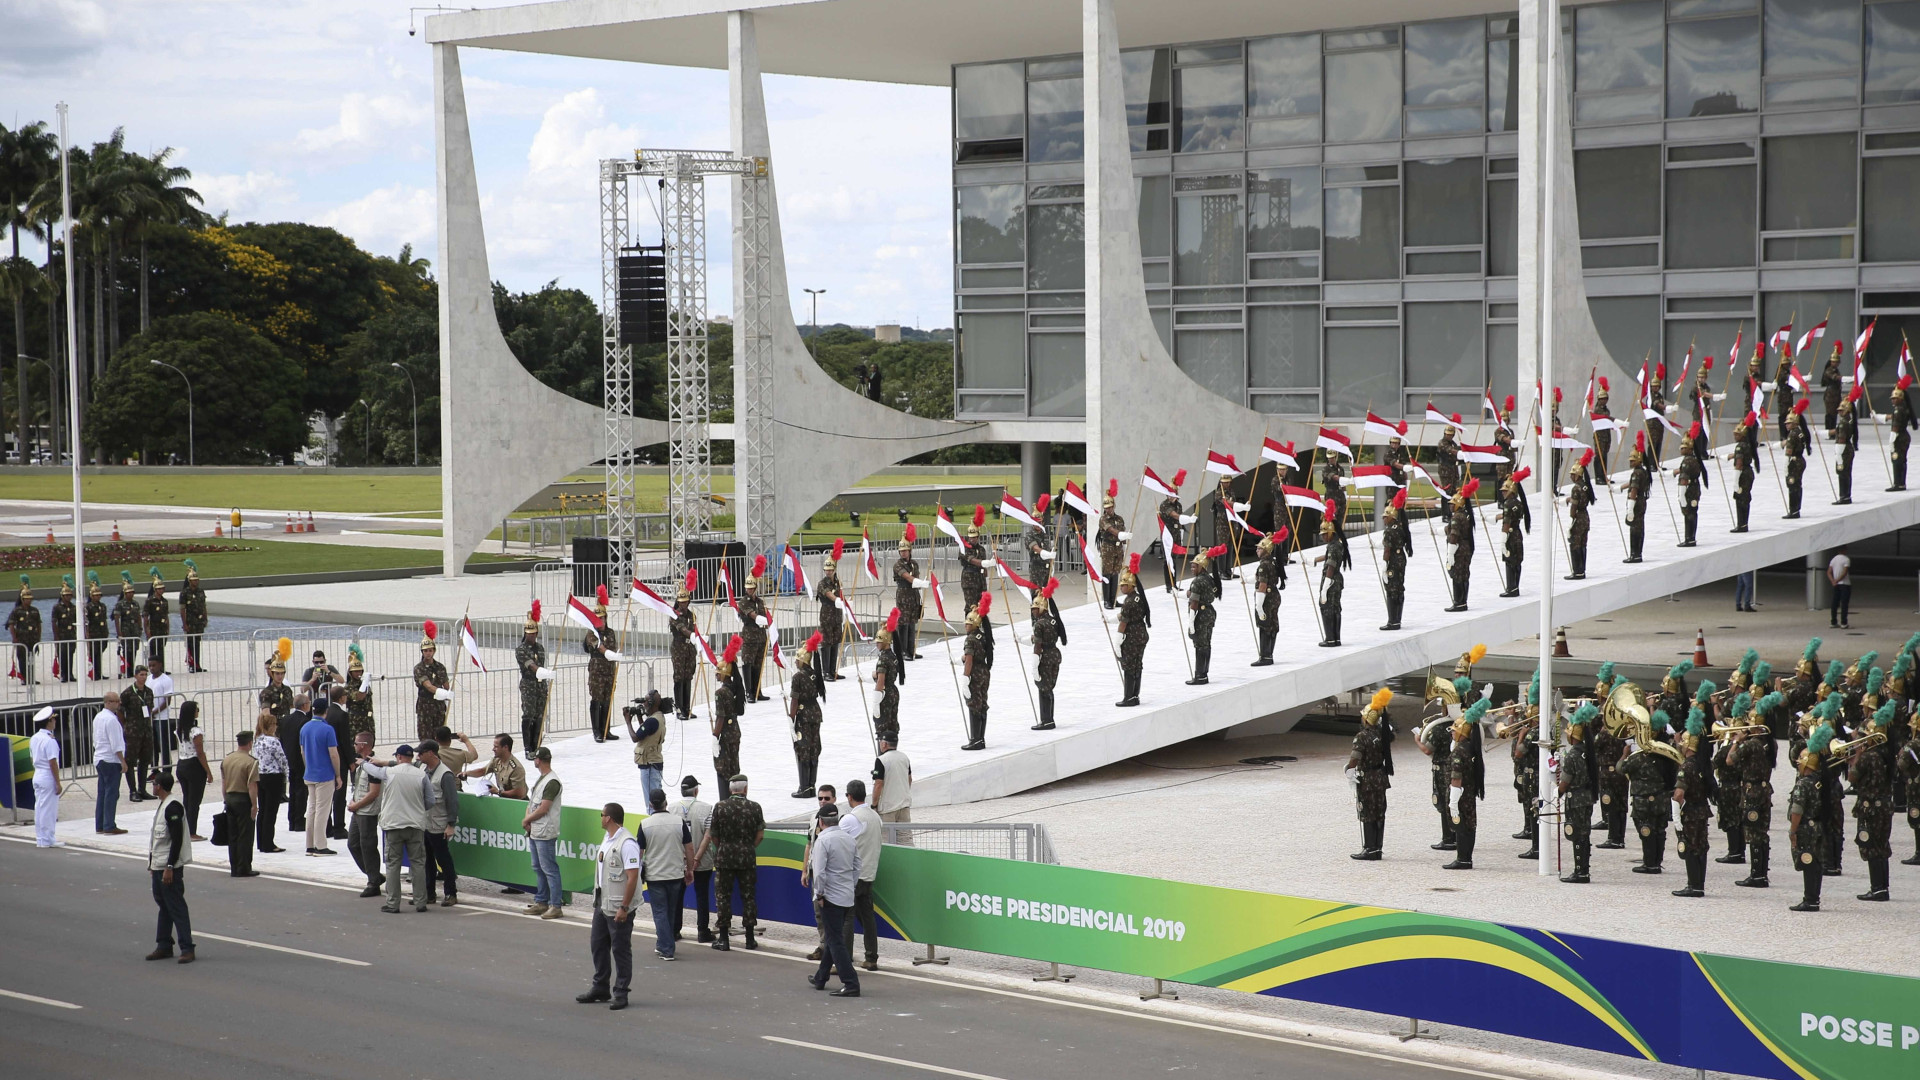 Veja fotos do último ensaio antes da cerimônia de posse de Bolsonaro